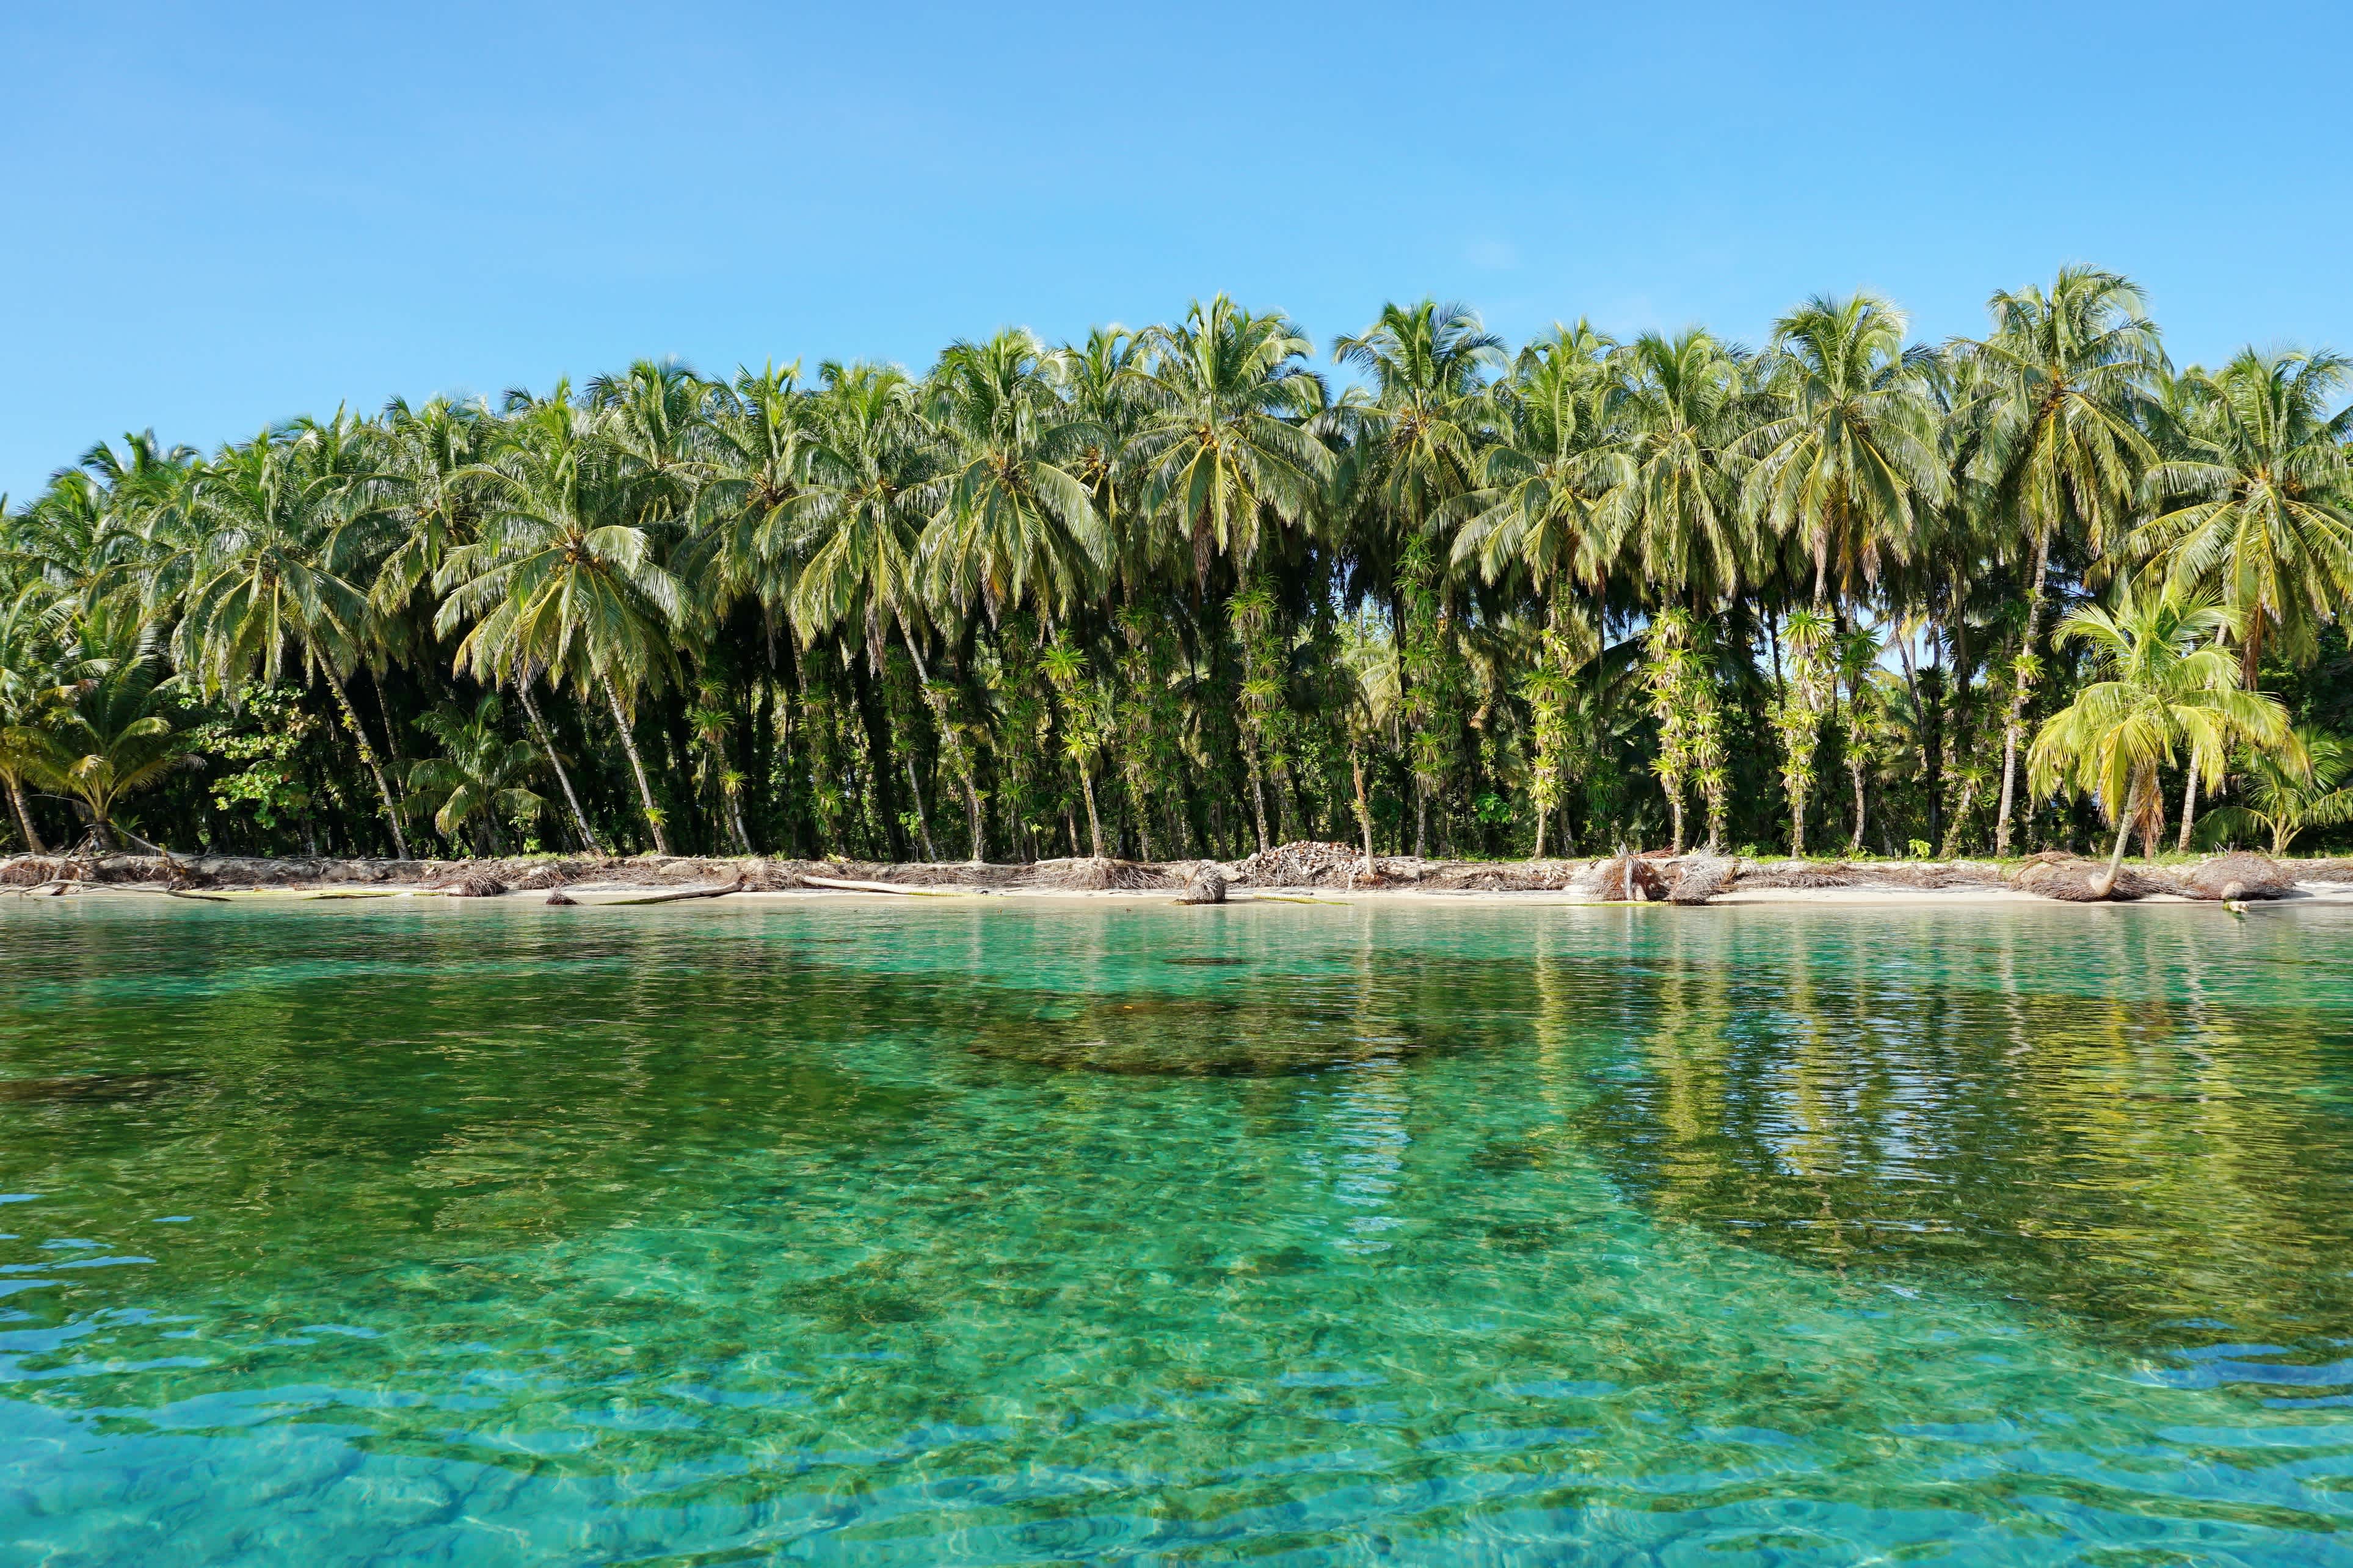 Üppige Kokospalmen mit Epiphyten an tropischer Küste mit klarem Wasser, Karibik, Zapatillas-Inseln, Bocas del Toro, Panama